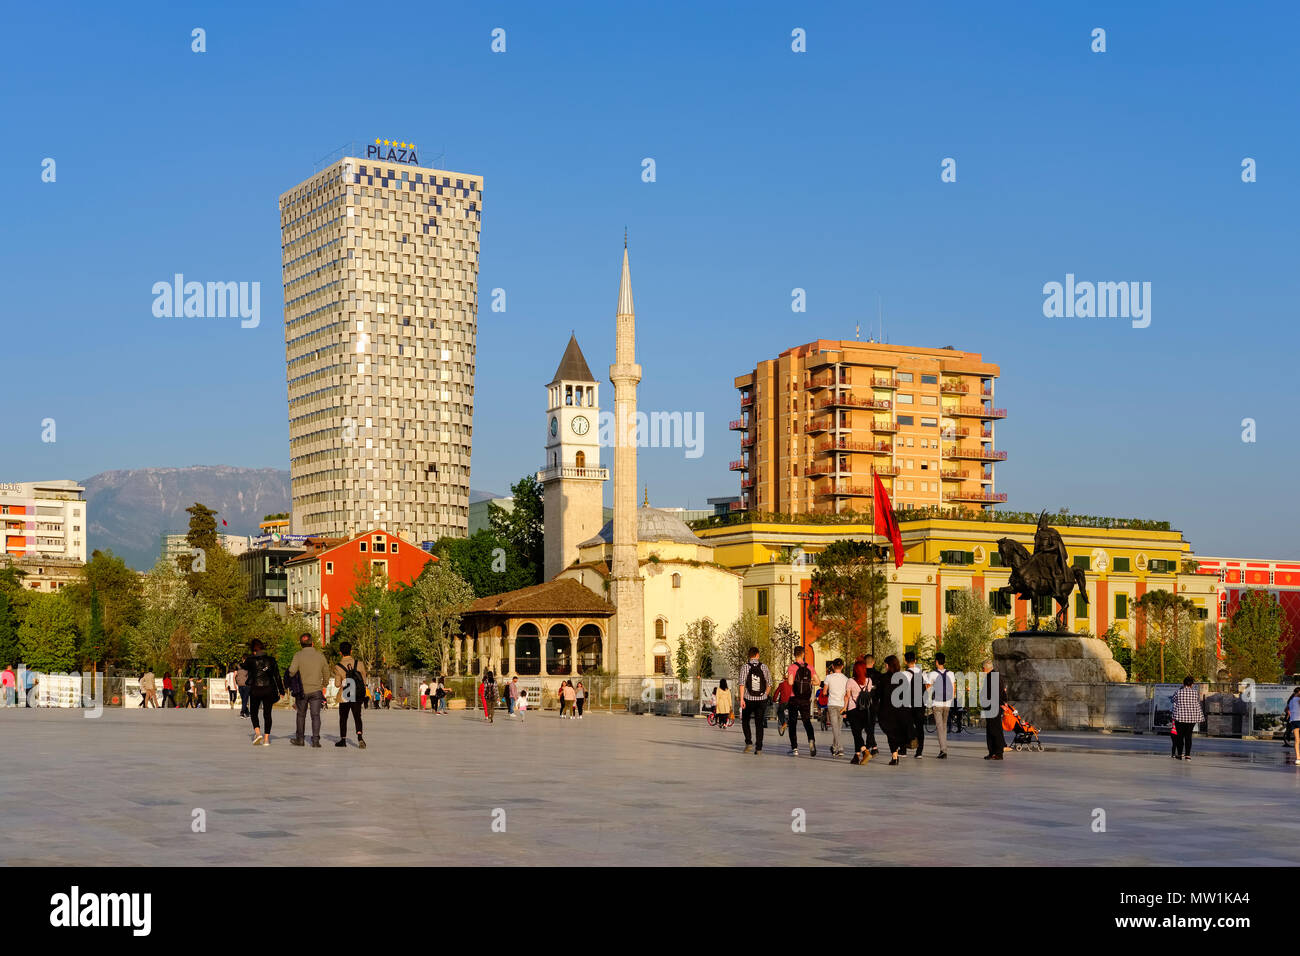 La place Skanderbeg avec TID Tower Hotel Plaza, Ethem Bey mosquée et tour de l'horloge, Tirana, Albanie Banque D'Images